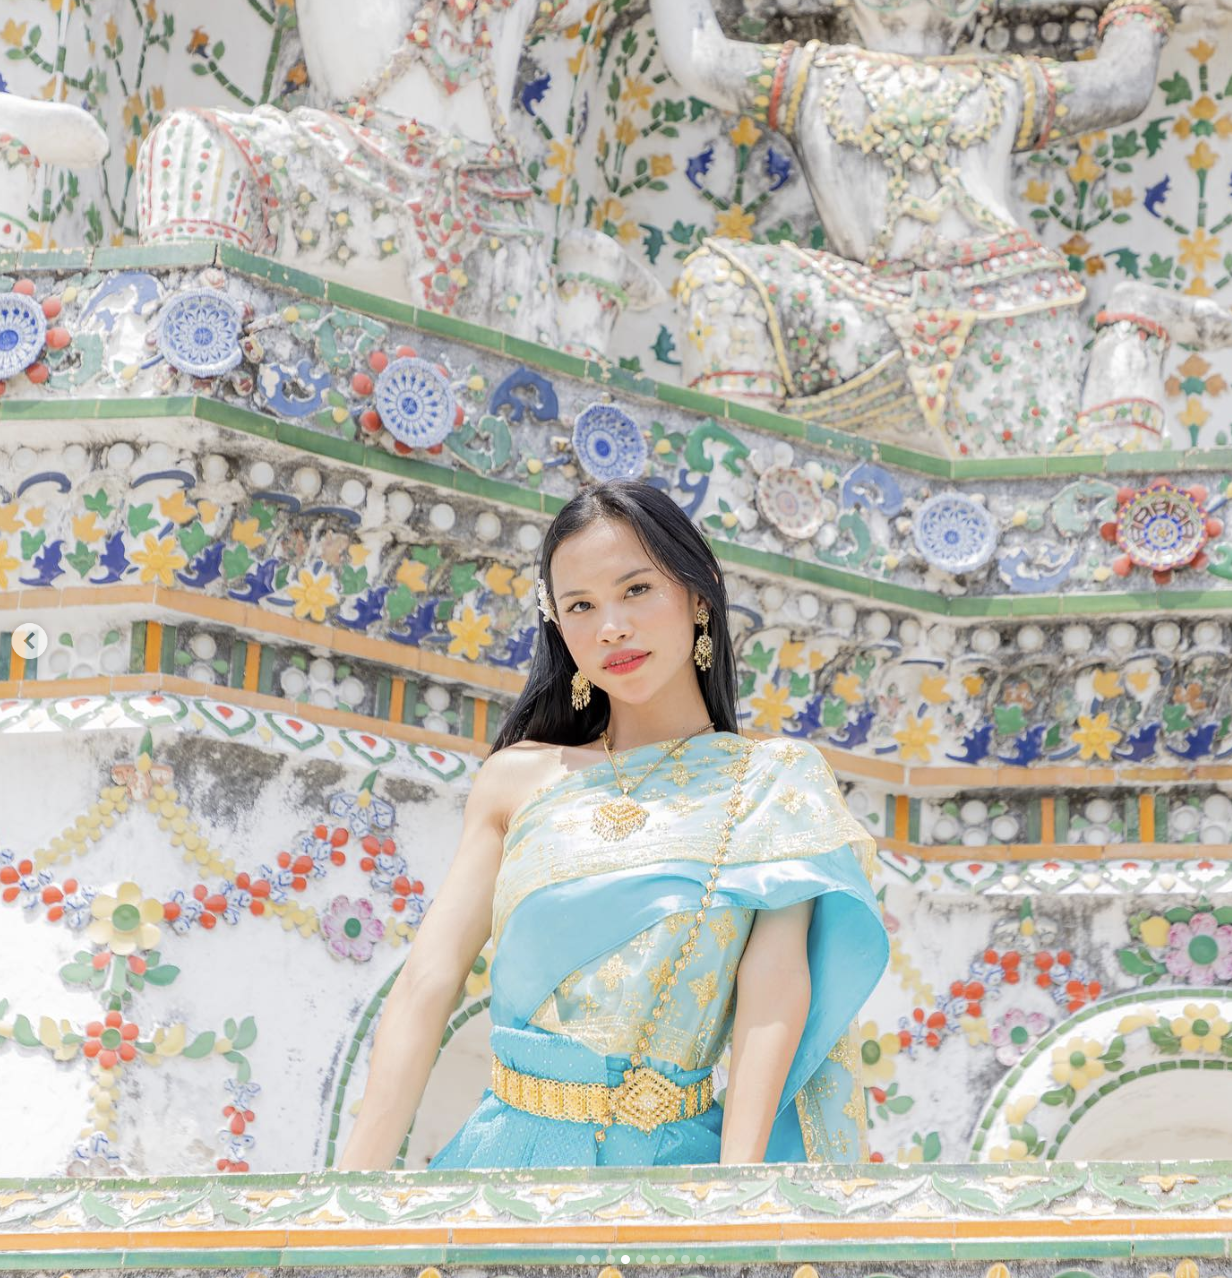 Malezyjska królowa piękności została pozbawiona tytułu za ''dziki taniec'' z półnagimi mężczyznami w Tajlandii. Zdjęcie.